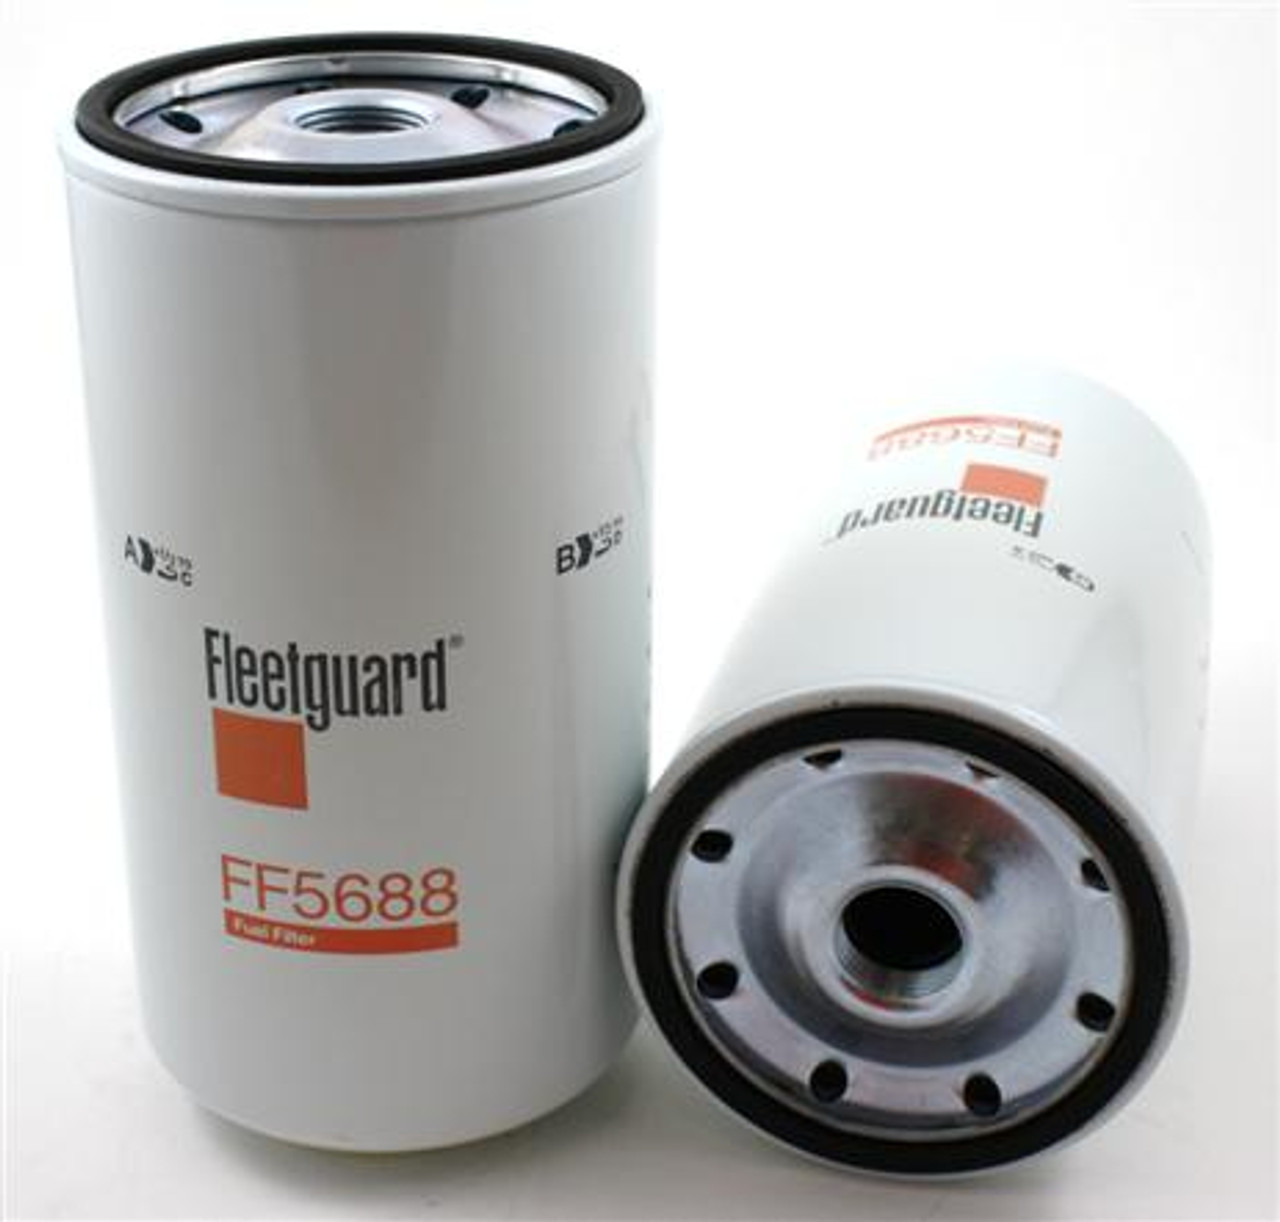 FF5688: Fleetguard Spin-On Fuel Filter